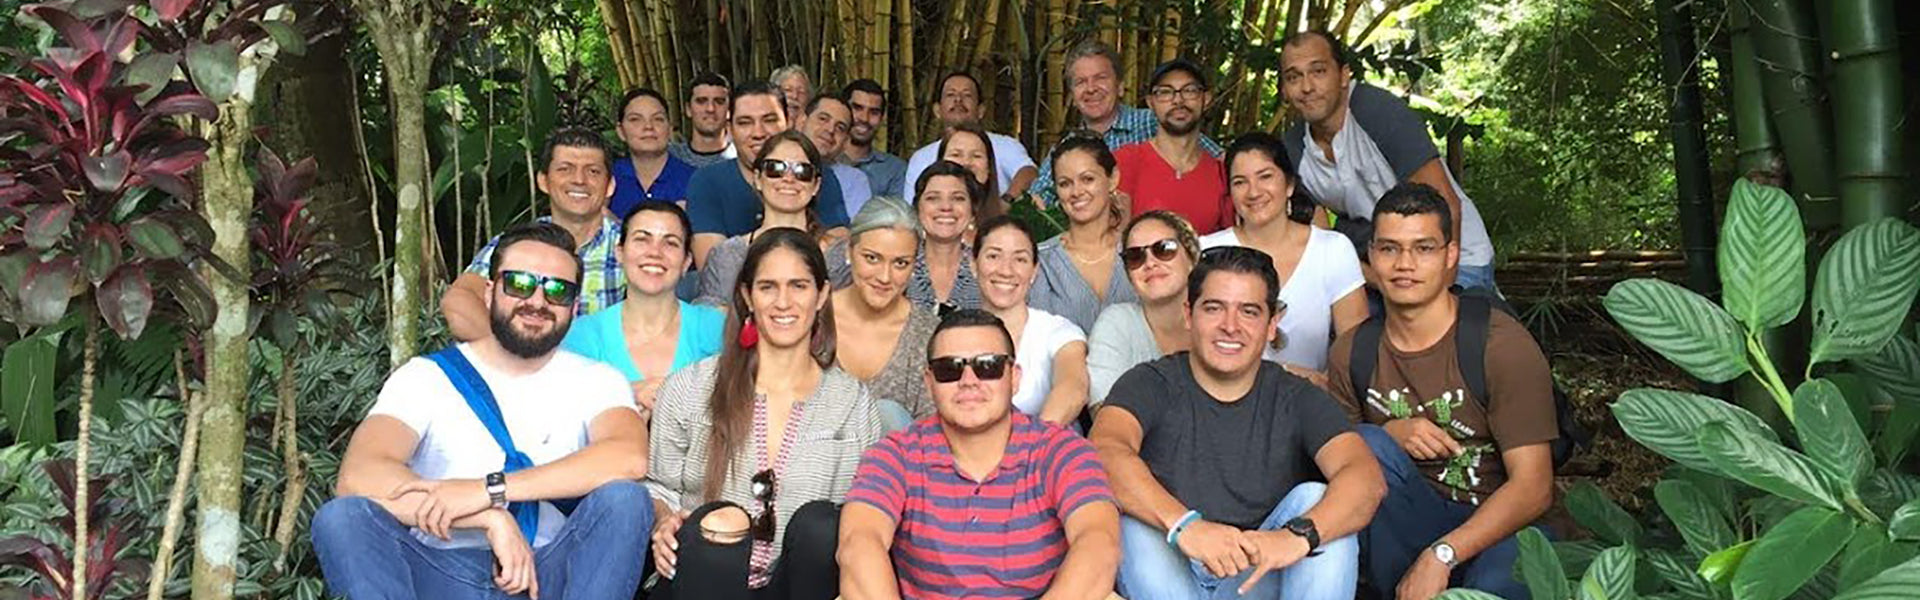 Eventos Corporativos en Costa Rica Meadery - Ambiente cómodo e íntimo